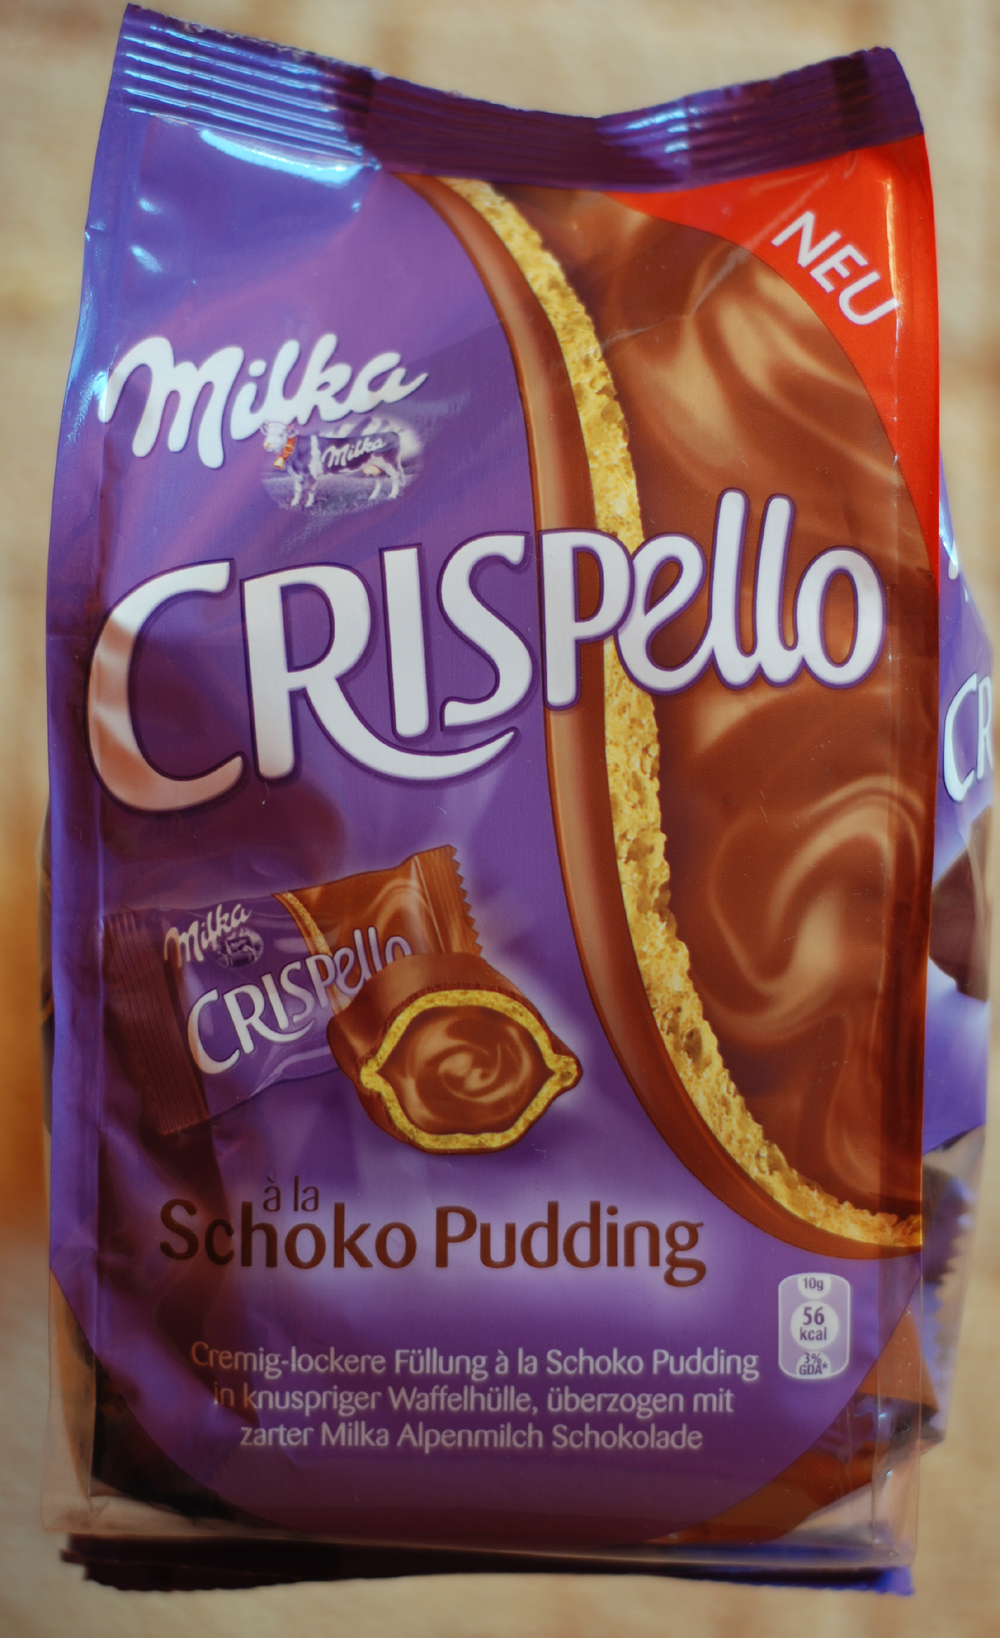 Milka Crispello - à la Schoko Pudding - A csokoládé a legjobb terápia